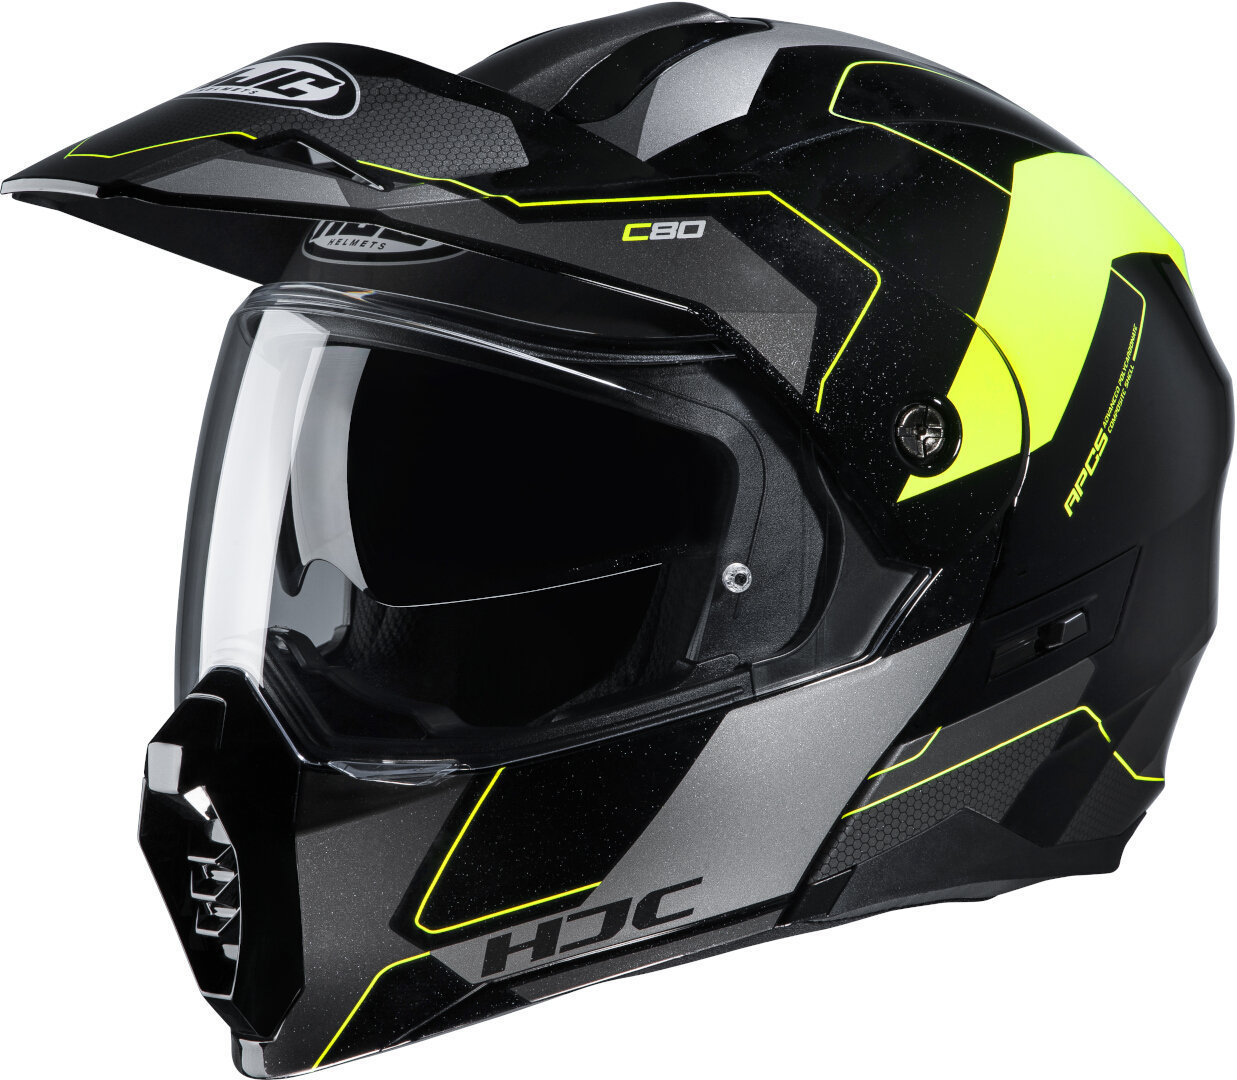 Image of HJC C80 Rox casco, nero-giallo, dimensione L